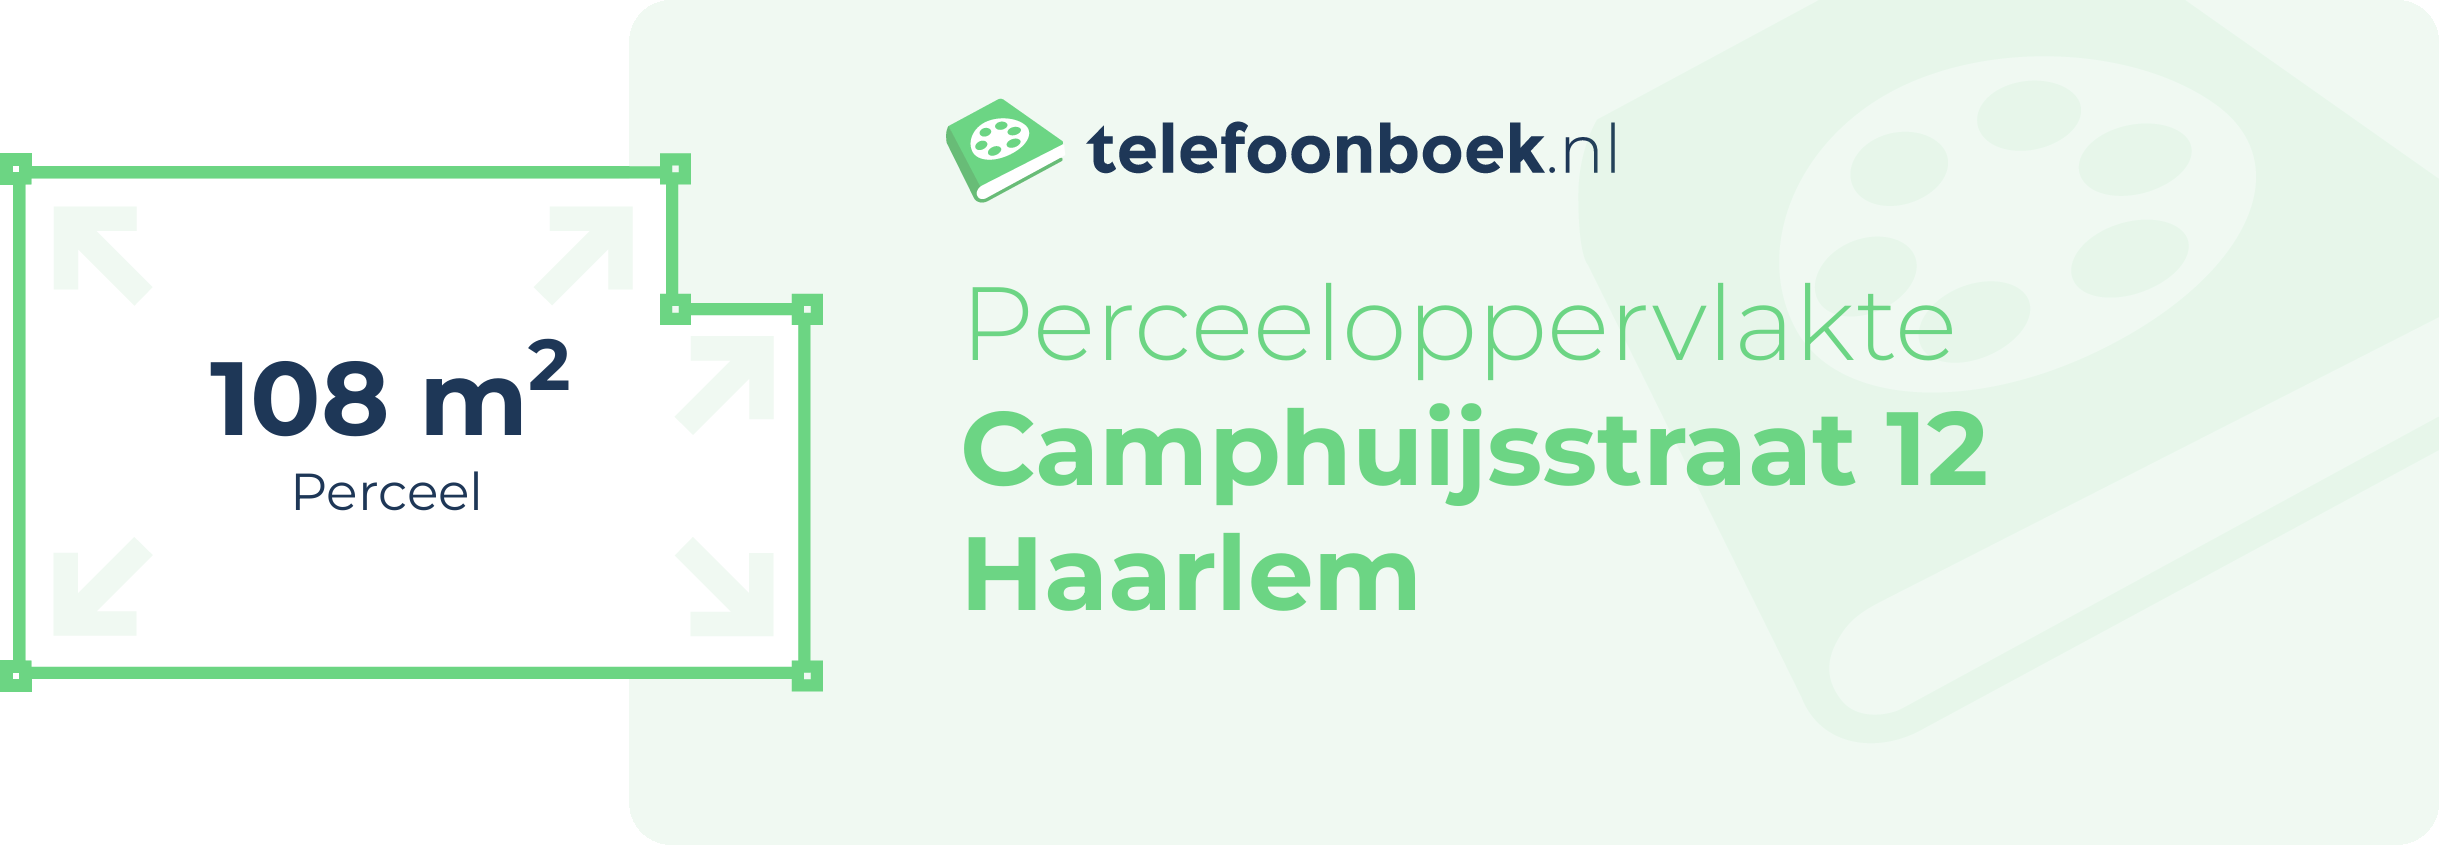 Perceeloppervlakte Camphuijsstraat 12 Haarlem